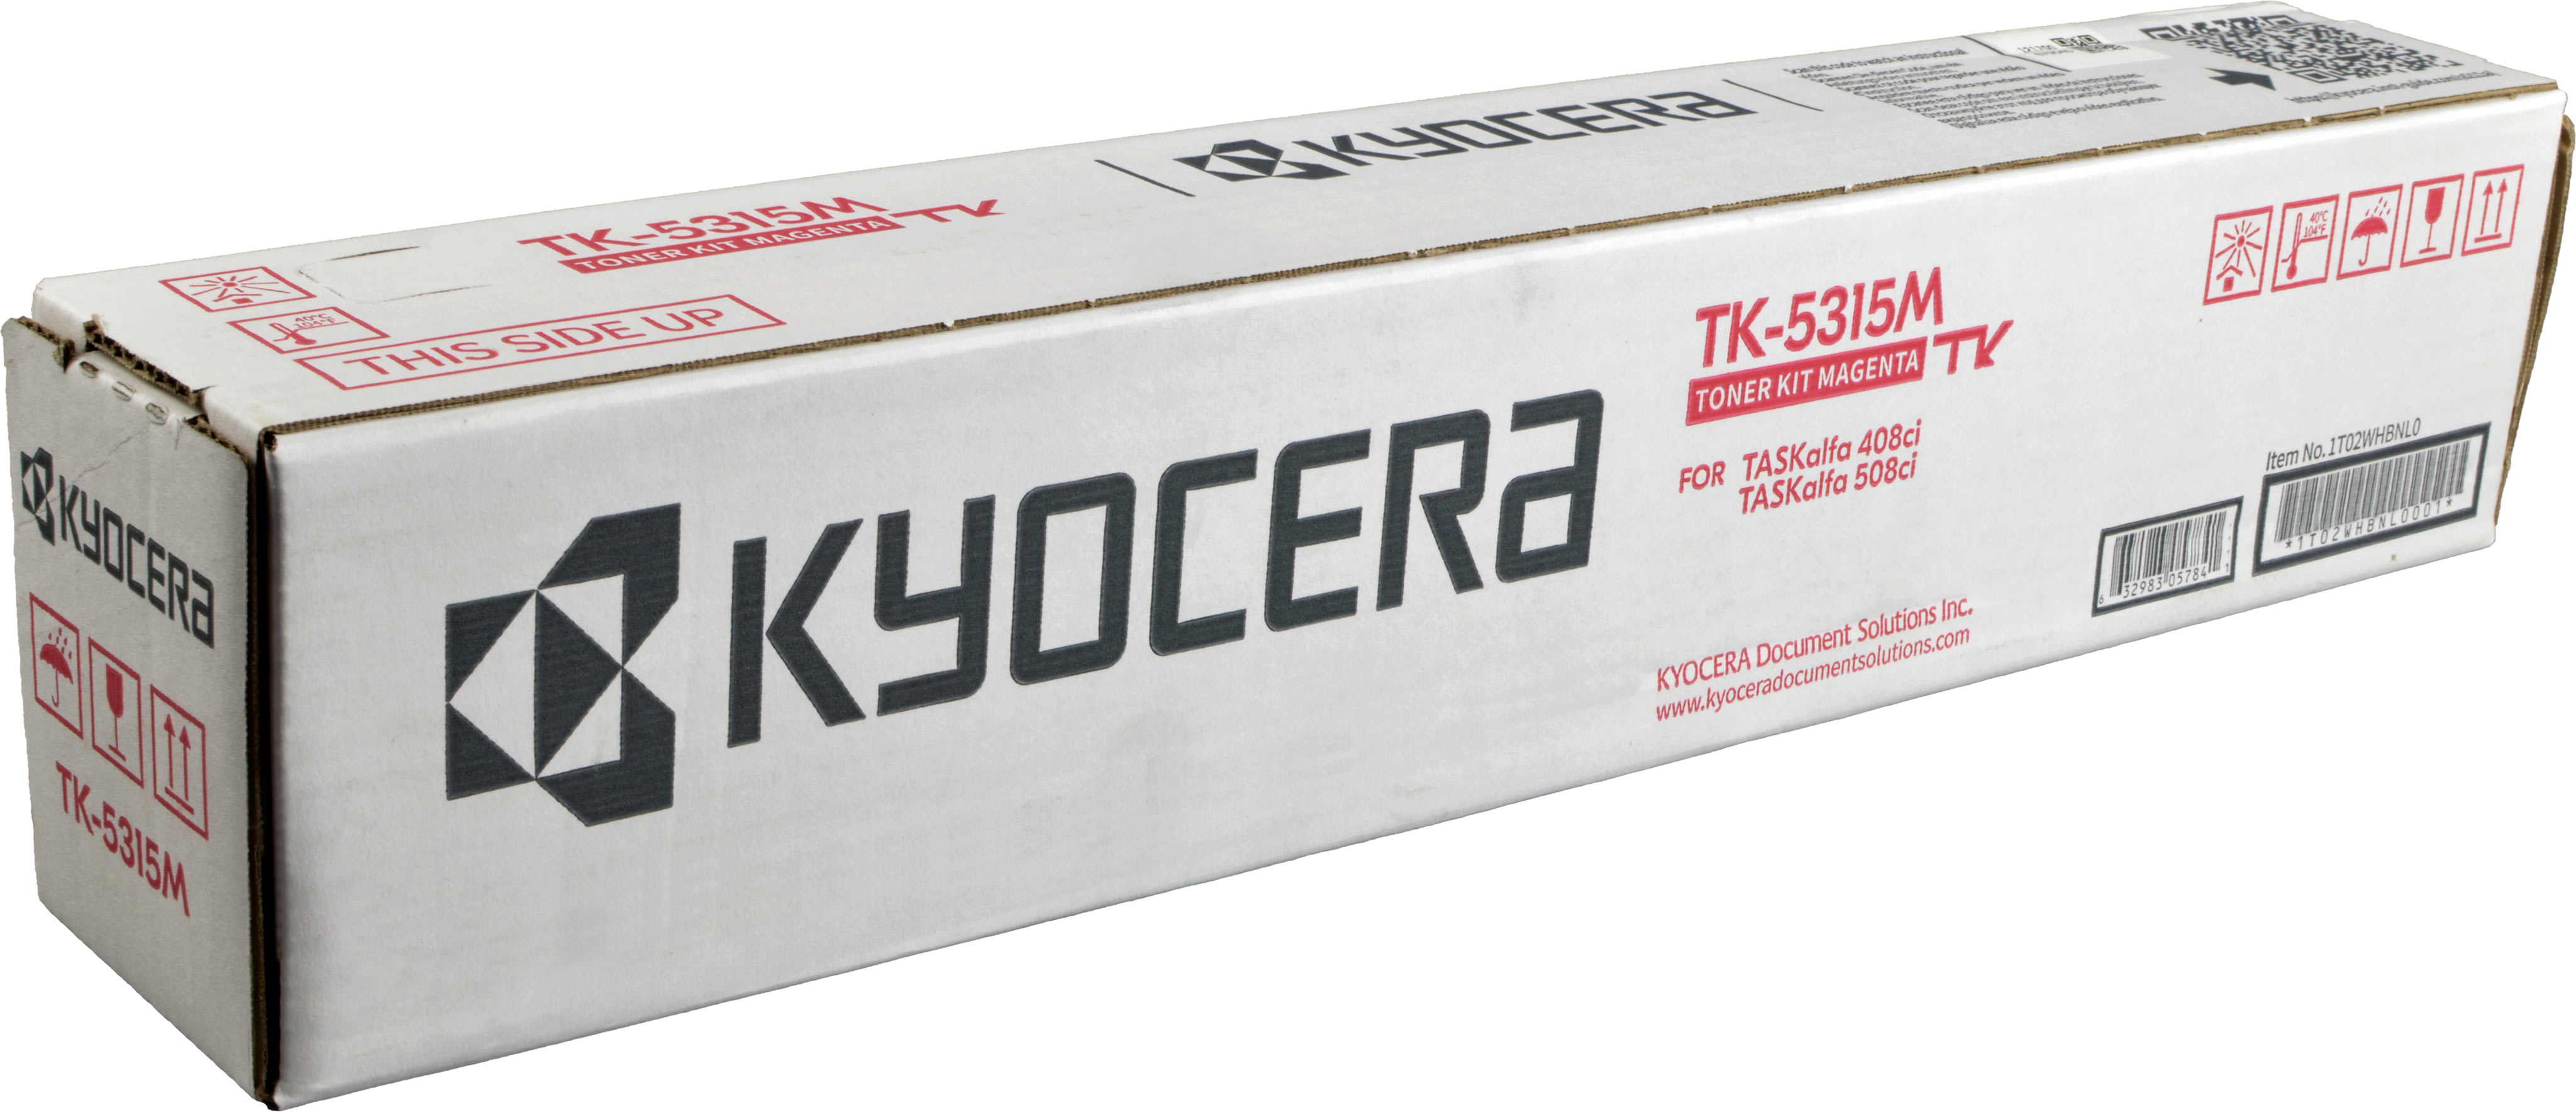 Kyocera Toner TK-5315M  1T02WHBNL0  magenta